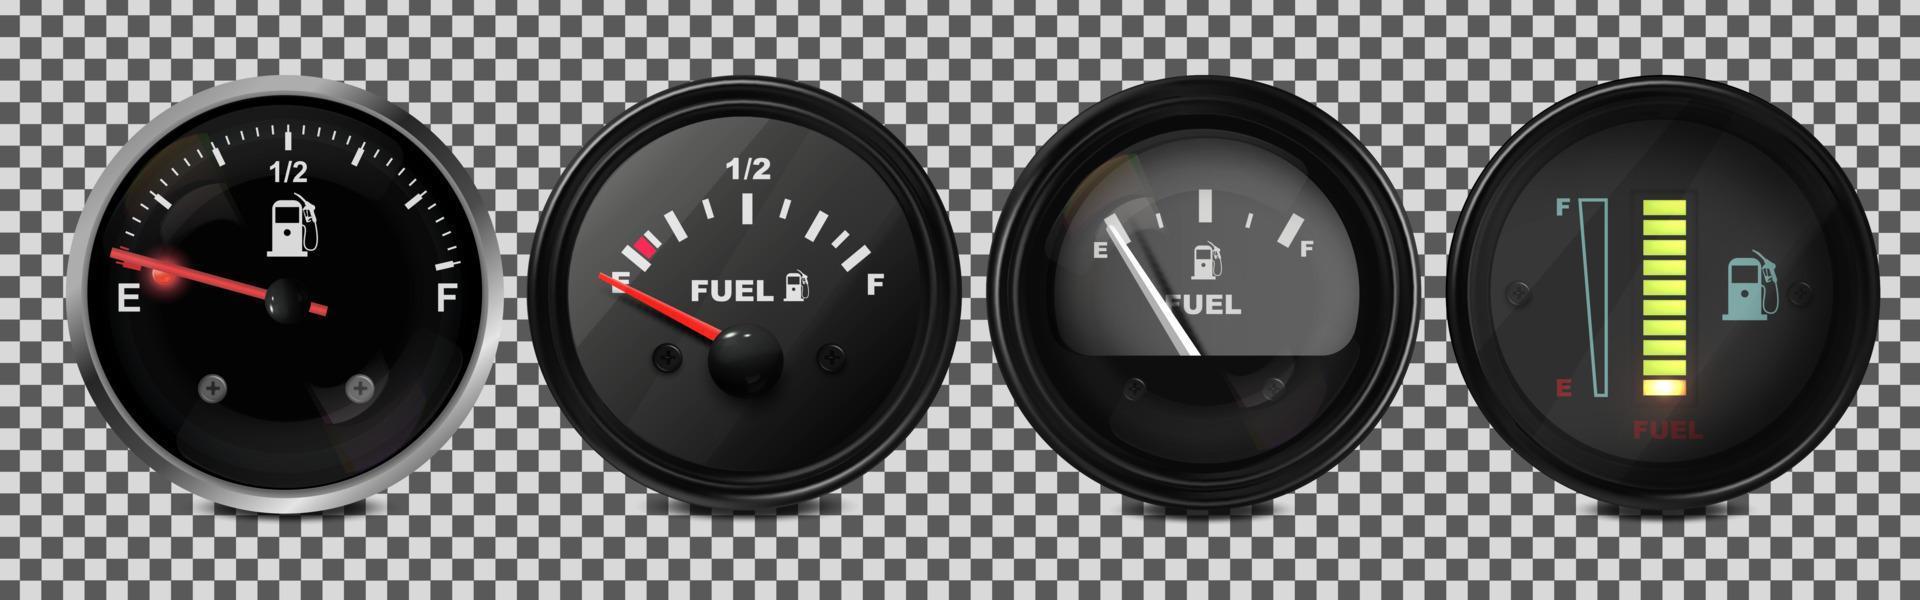 Vektor realistisch, 3D-Satz von Kraftstoffstandsanzeigen in einem Auto. Abbildung auf einem transparenten Hintergrund.